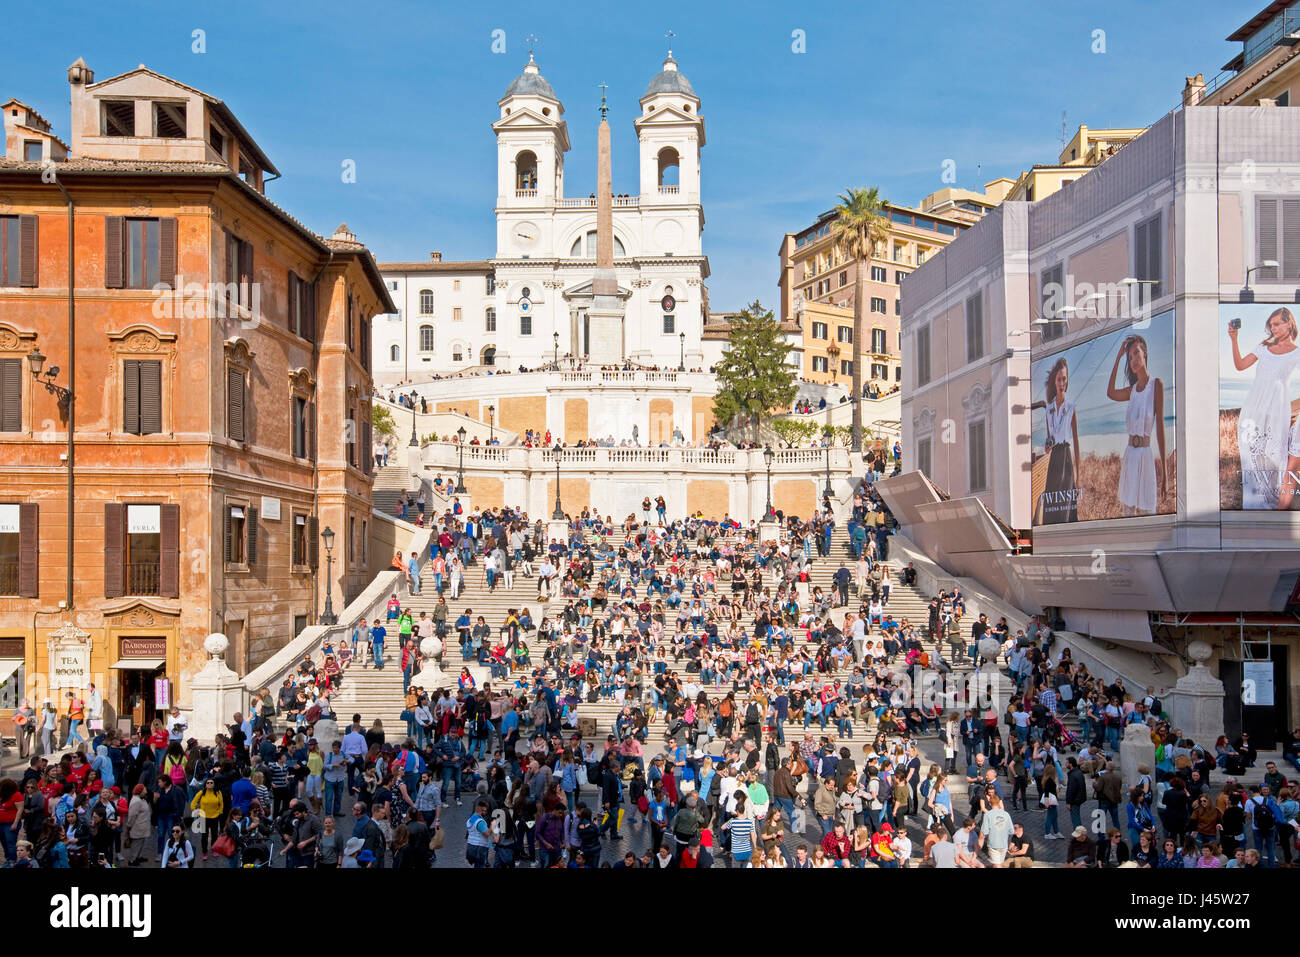 Scalinata di piazza di Spagna a Roma con la folla di turisti e visitatori in una giornata di sole con cielo blu e la chiesa di Trinità dei Monti in background. Foto Stock